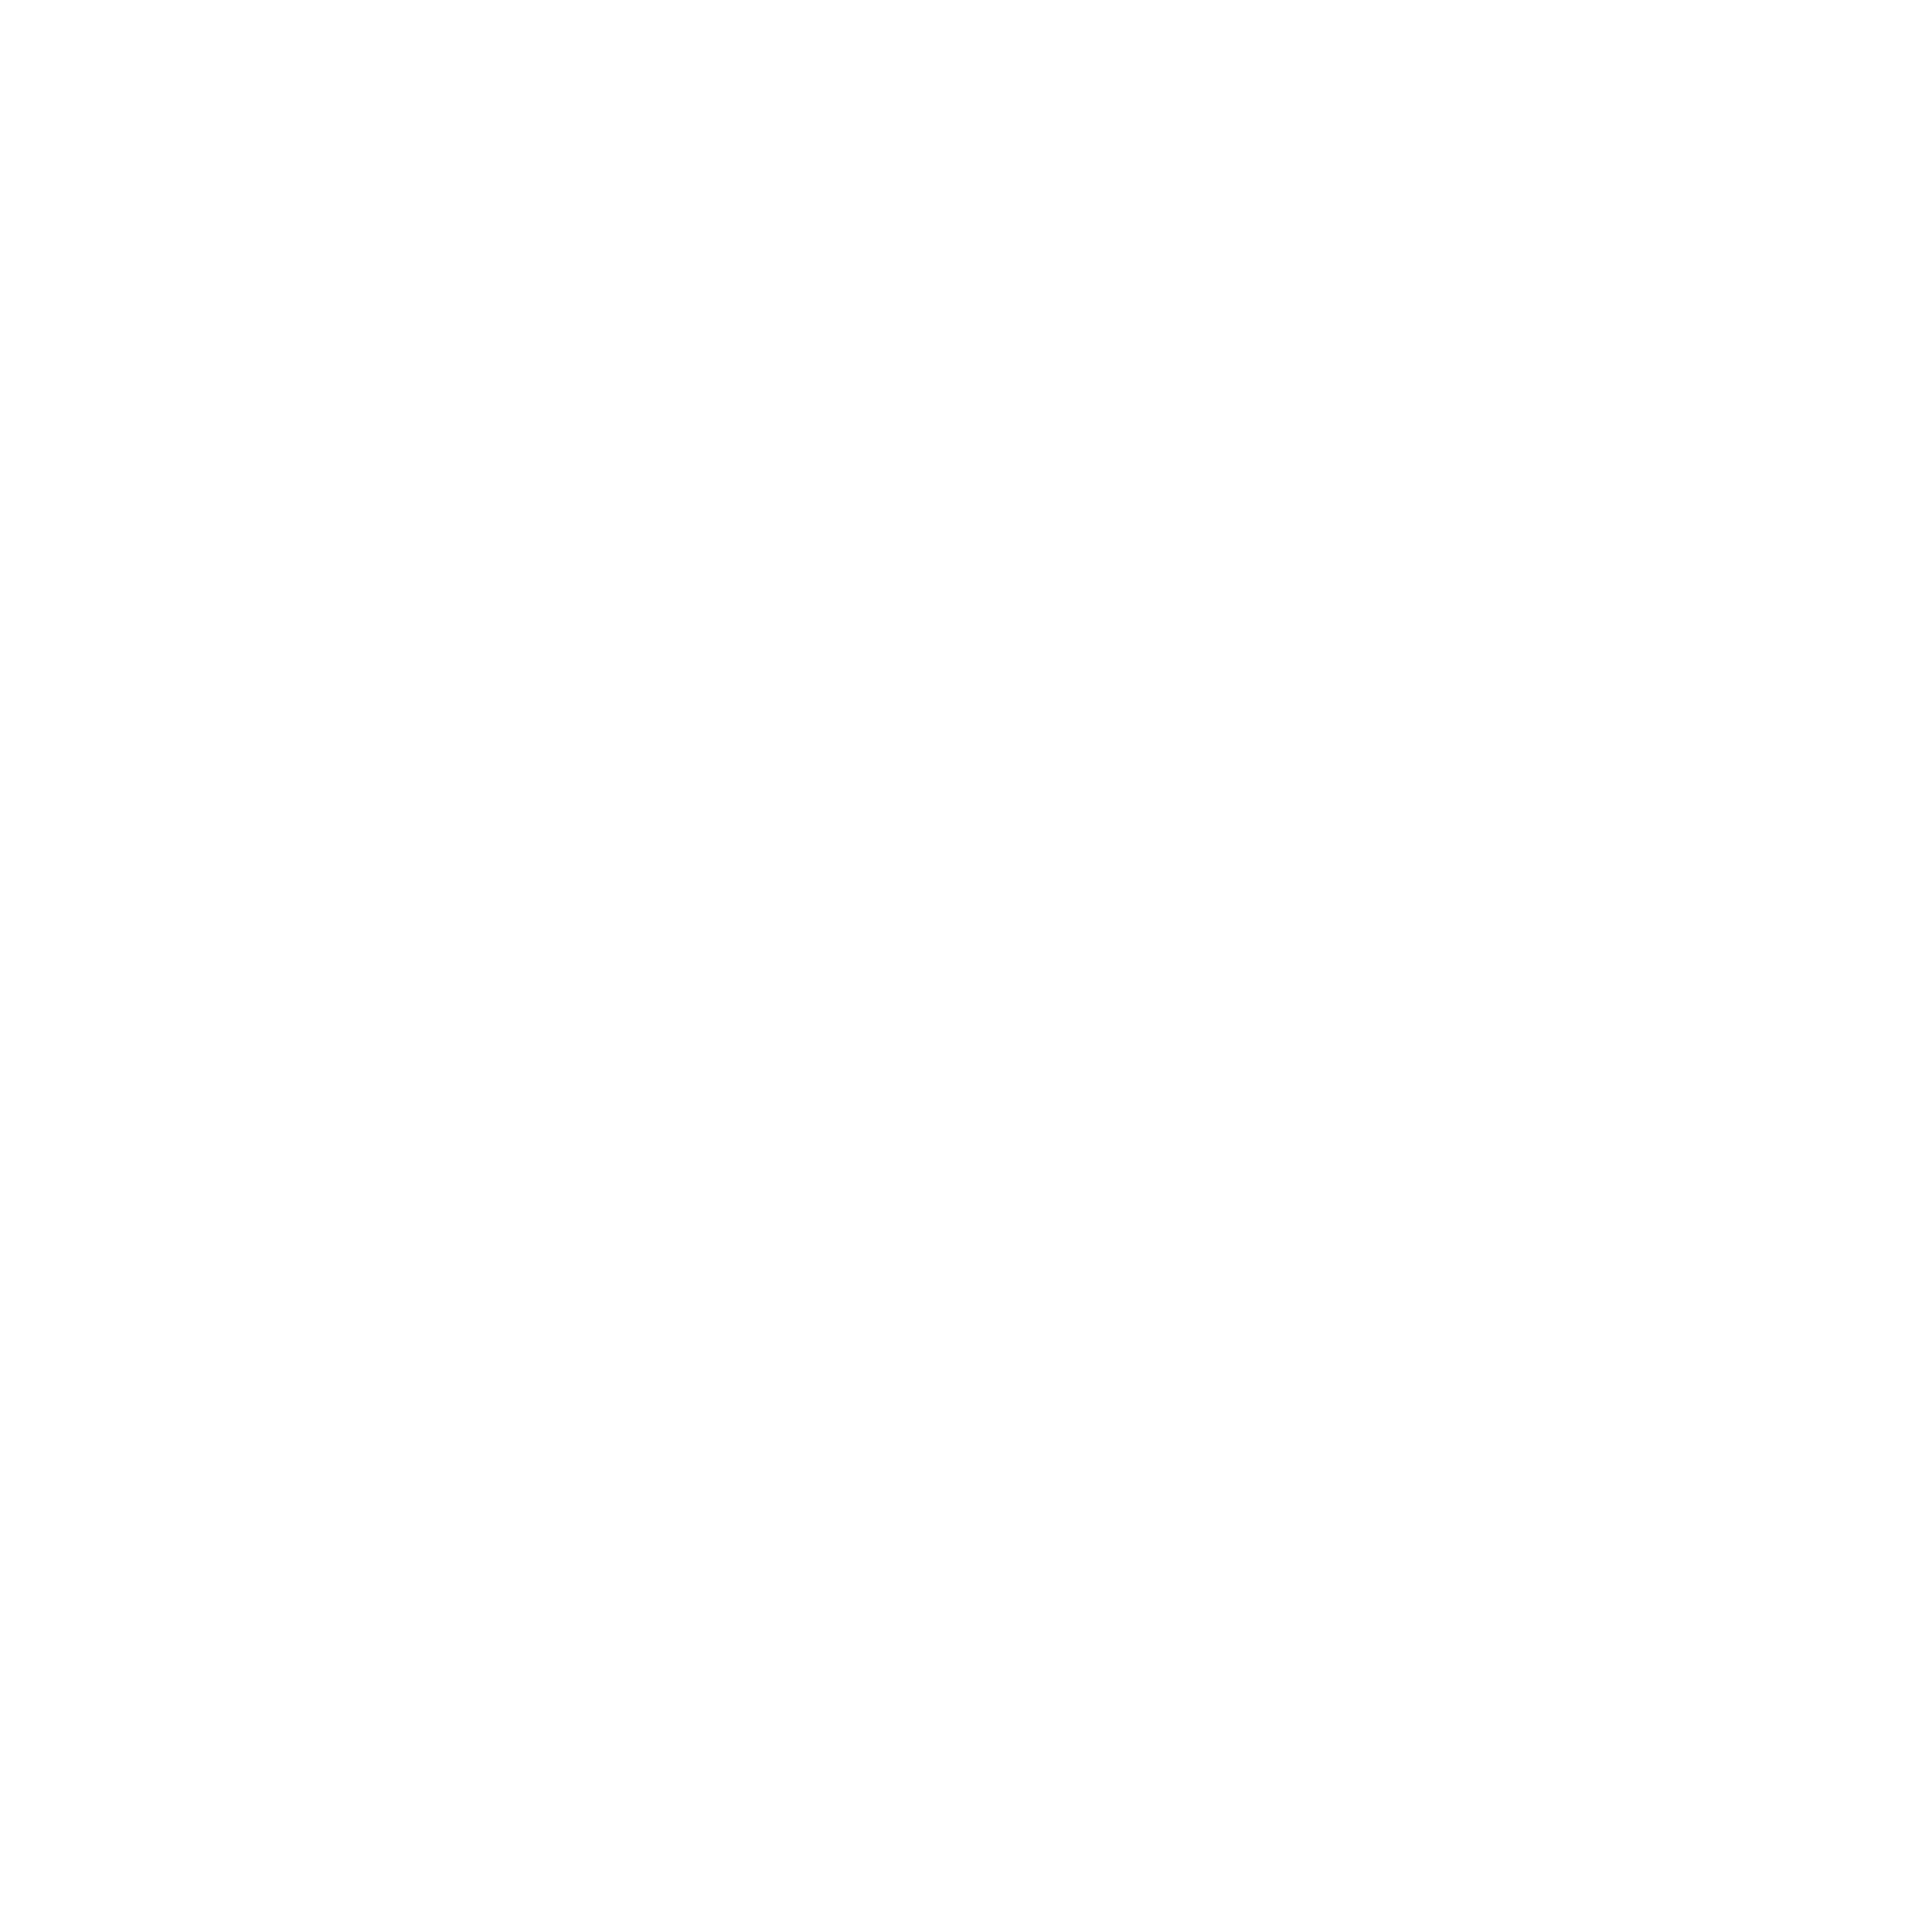 Fame Hotel Gading Serpong logo